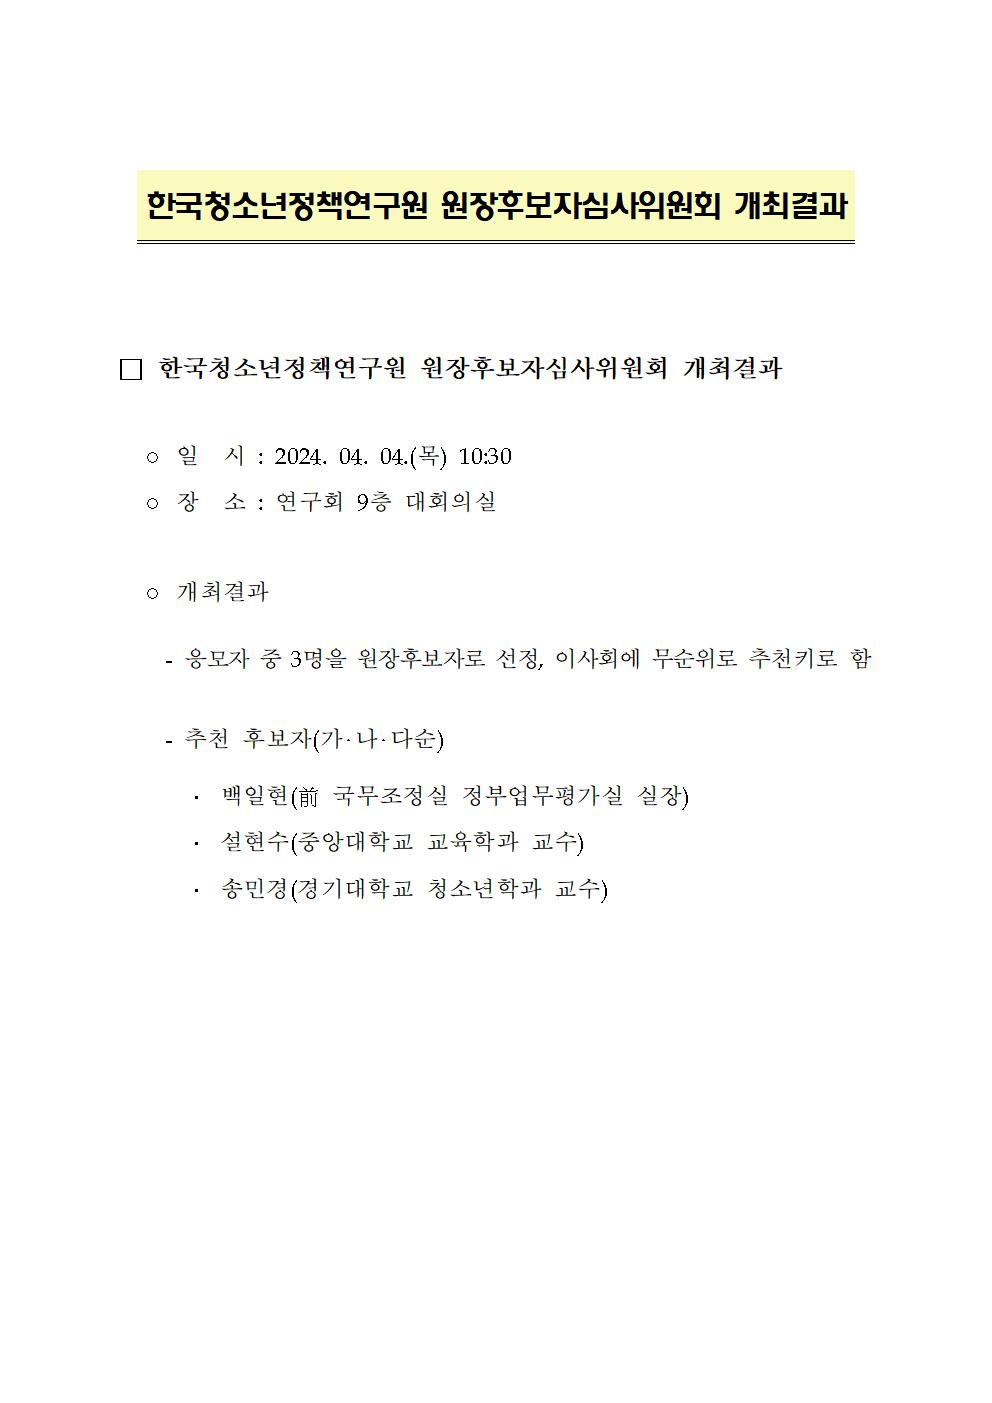 한국청소년정책연구원 원장후보자심사위원회 개최결과 상세 하단 참조